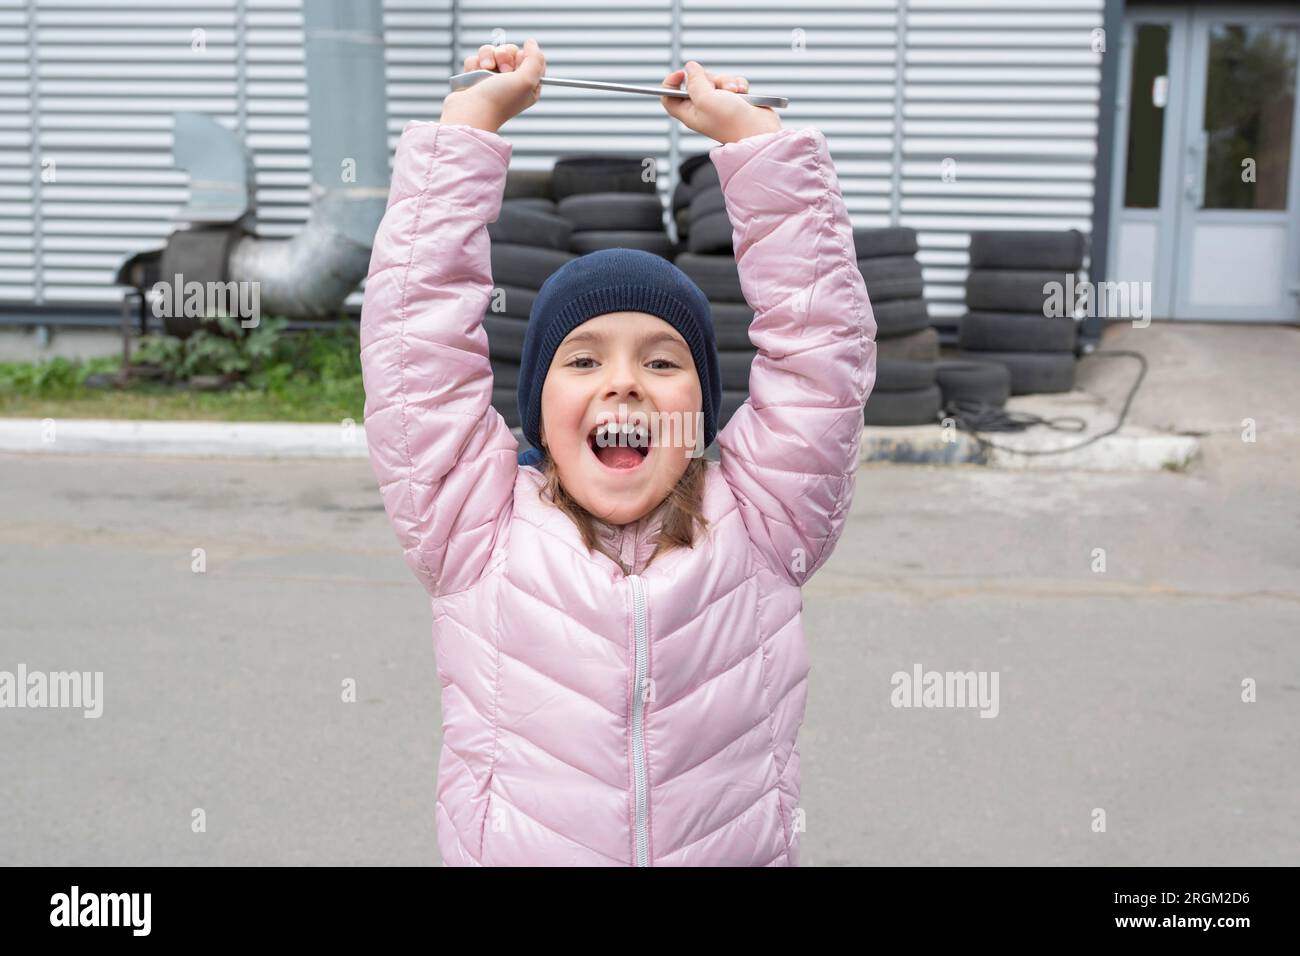 Ritratto di una bambina felice con una chiave inglese sullo sfondo del garage. Foto Stock